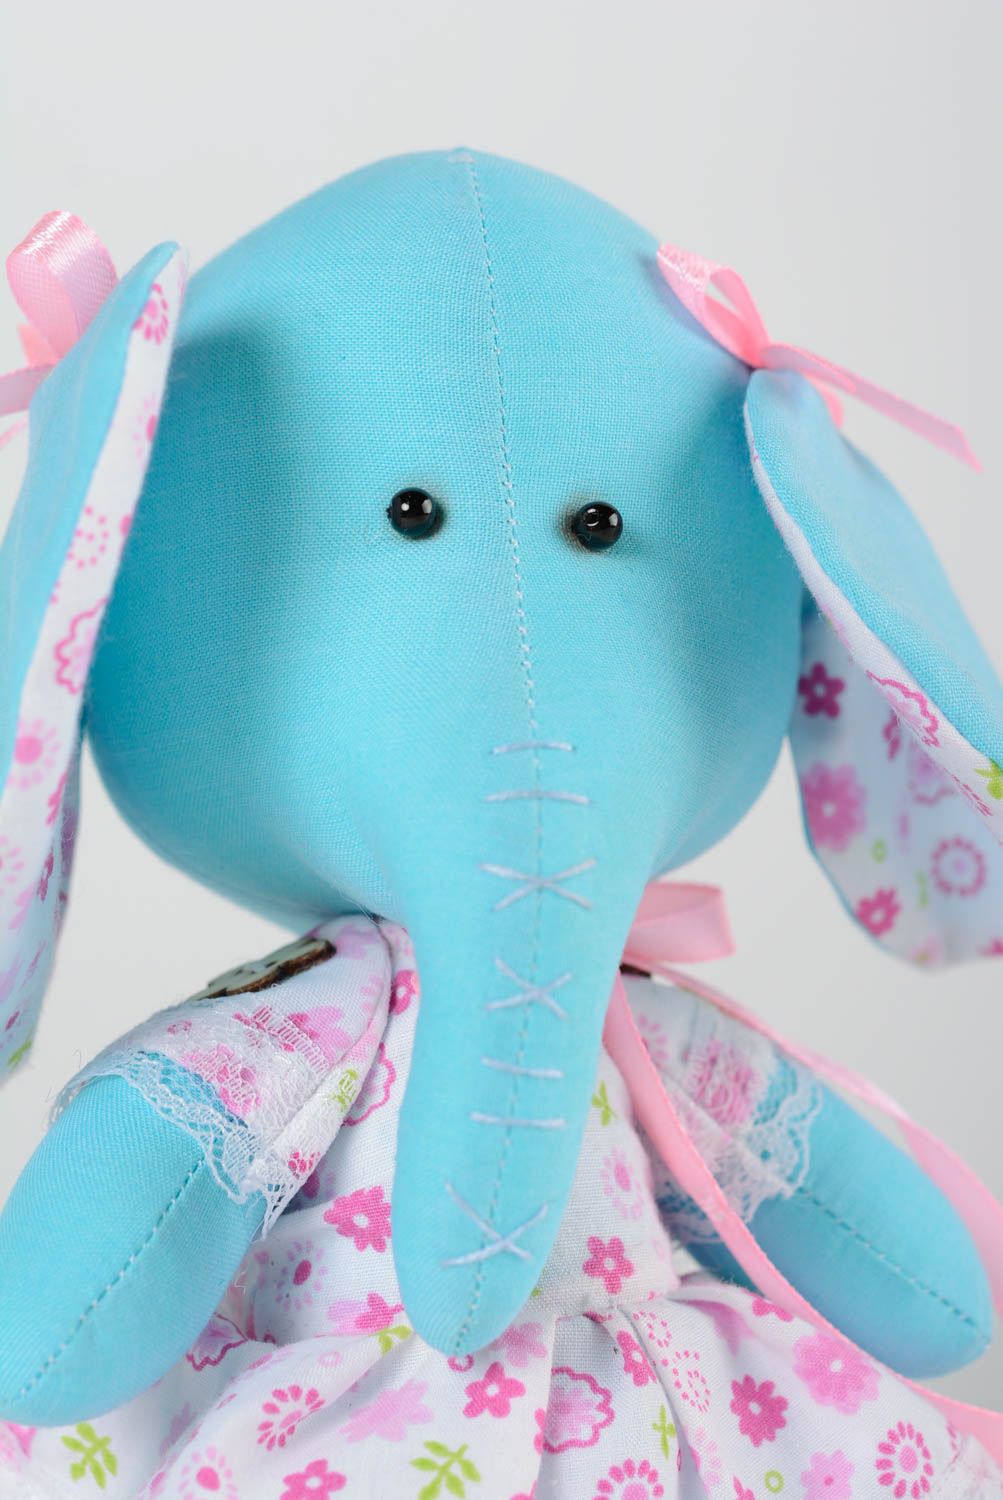 Мягкая оригинальная тканевая игрушка слоник голубой из хлопковой ткани хэнд мэйд фото 3